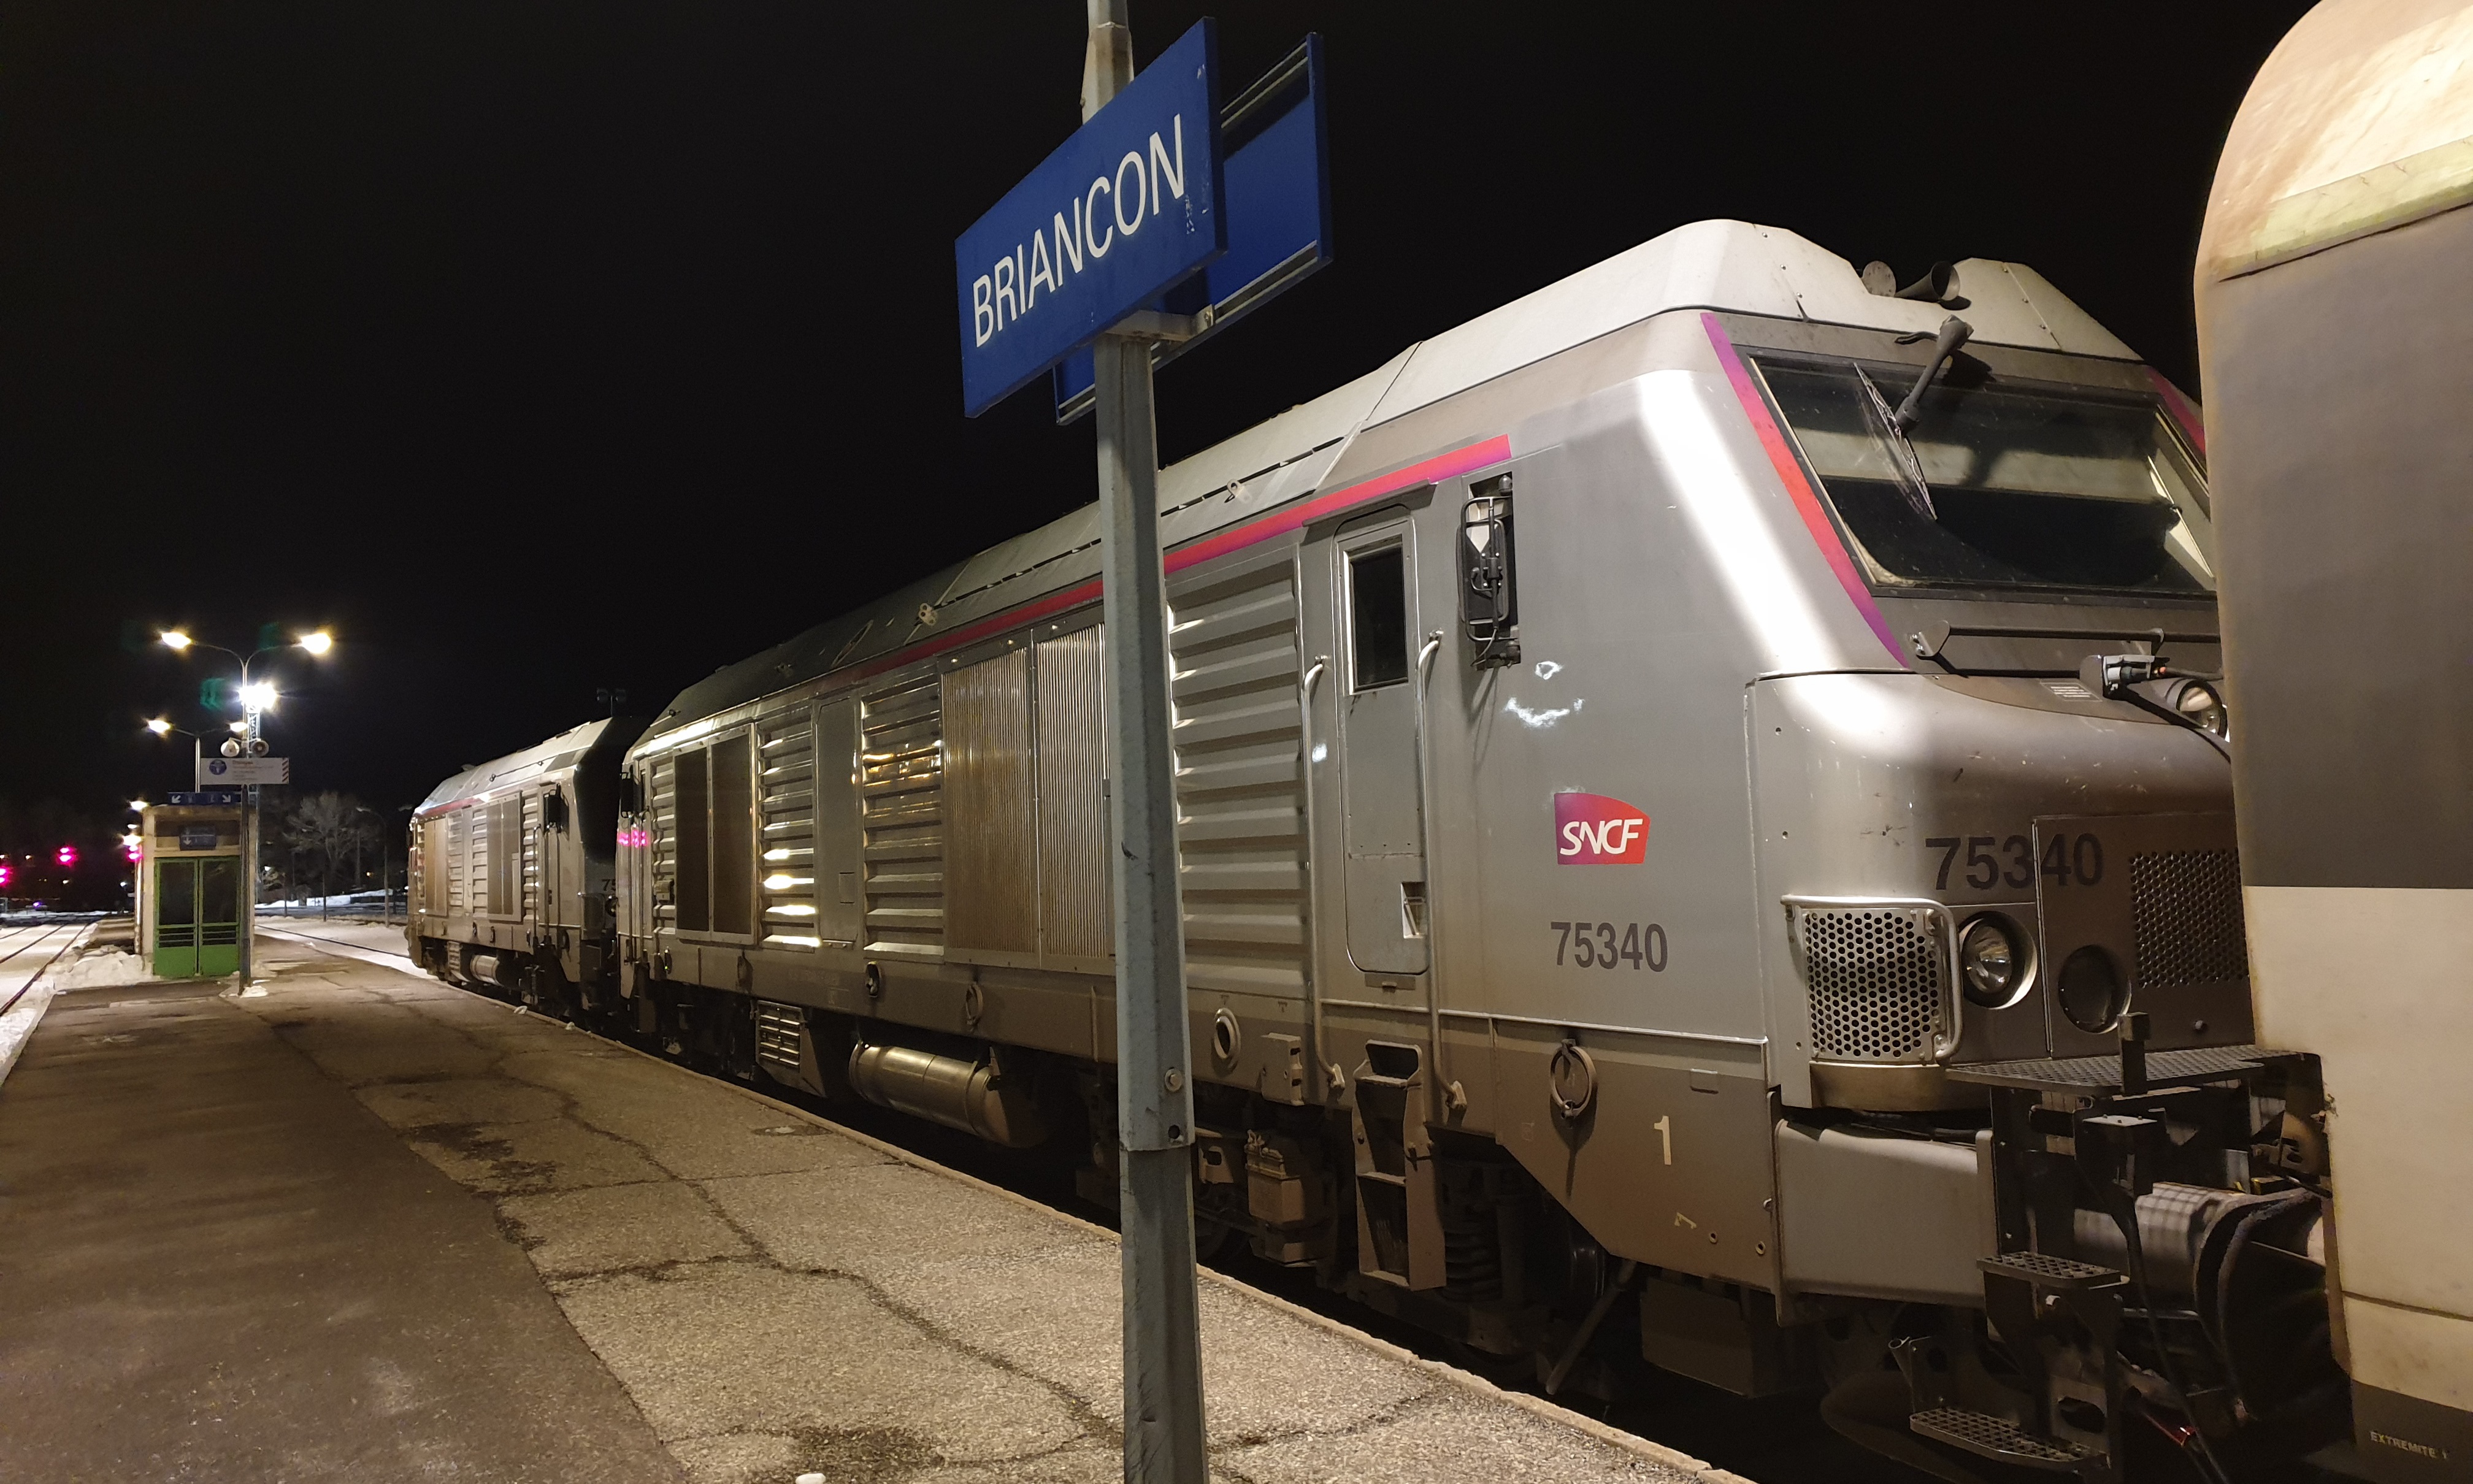 Le train de nuit Paris-Briançon, supprimé pendant 9 Mois 